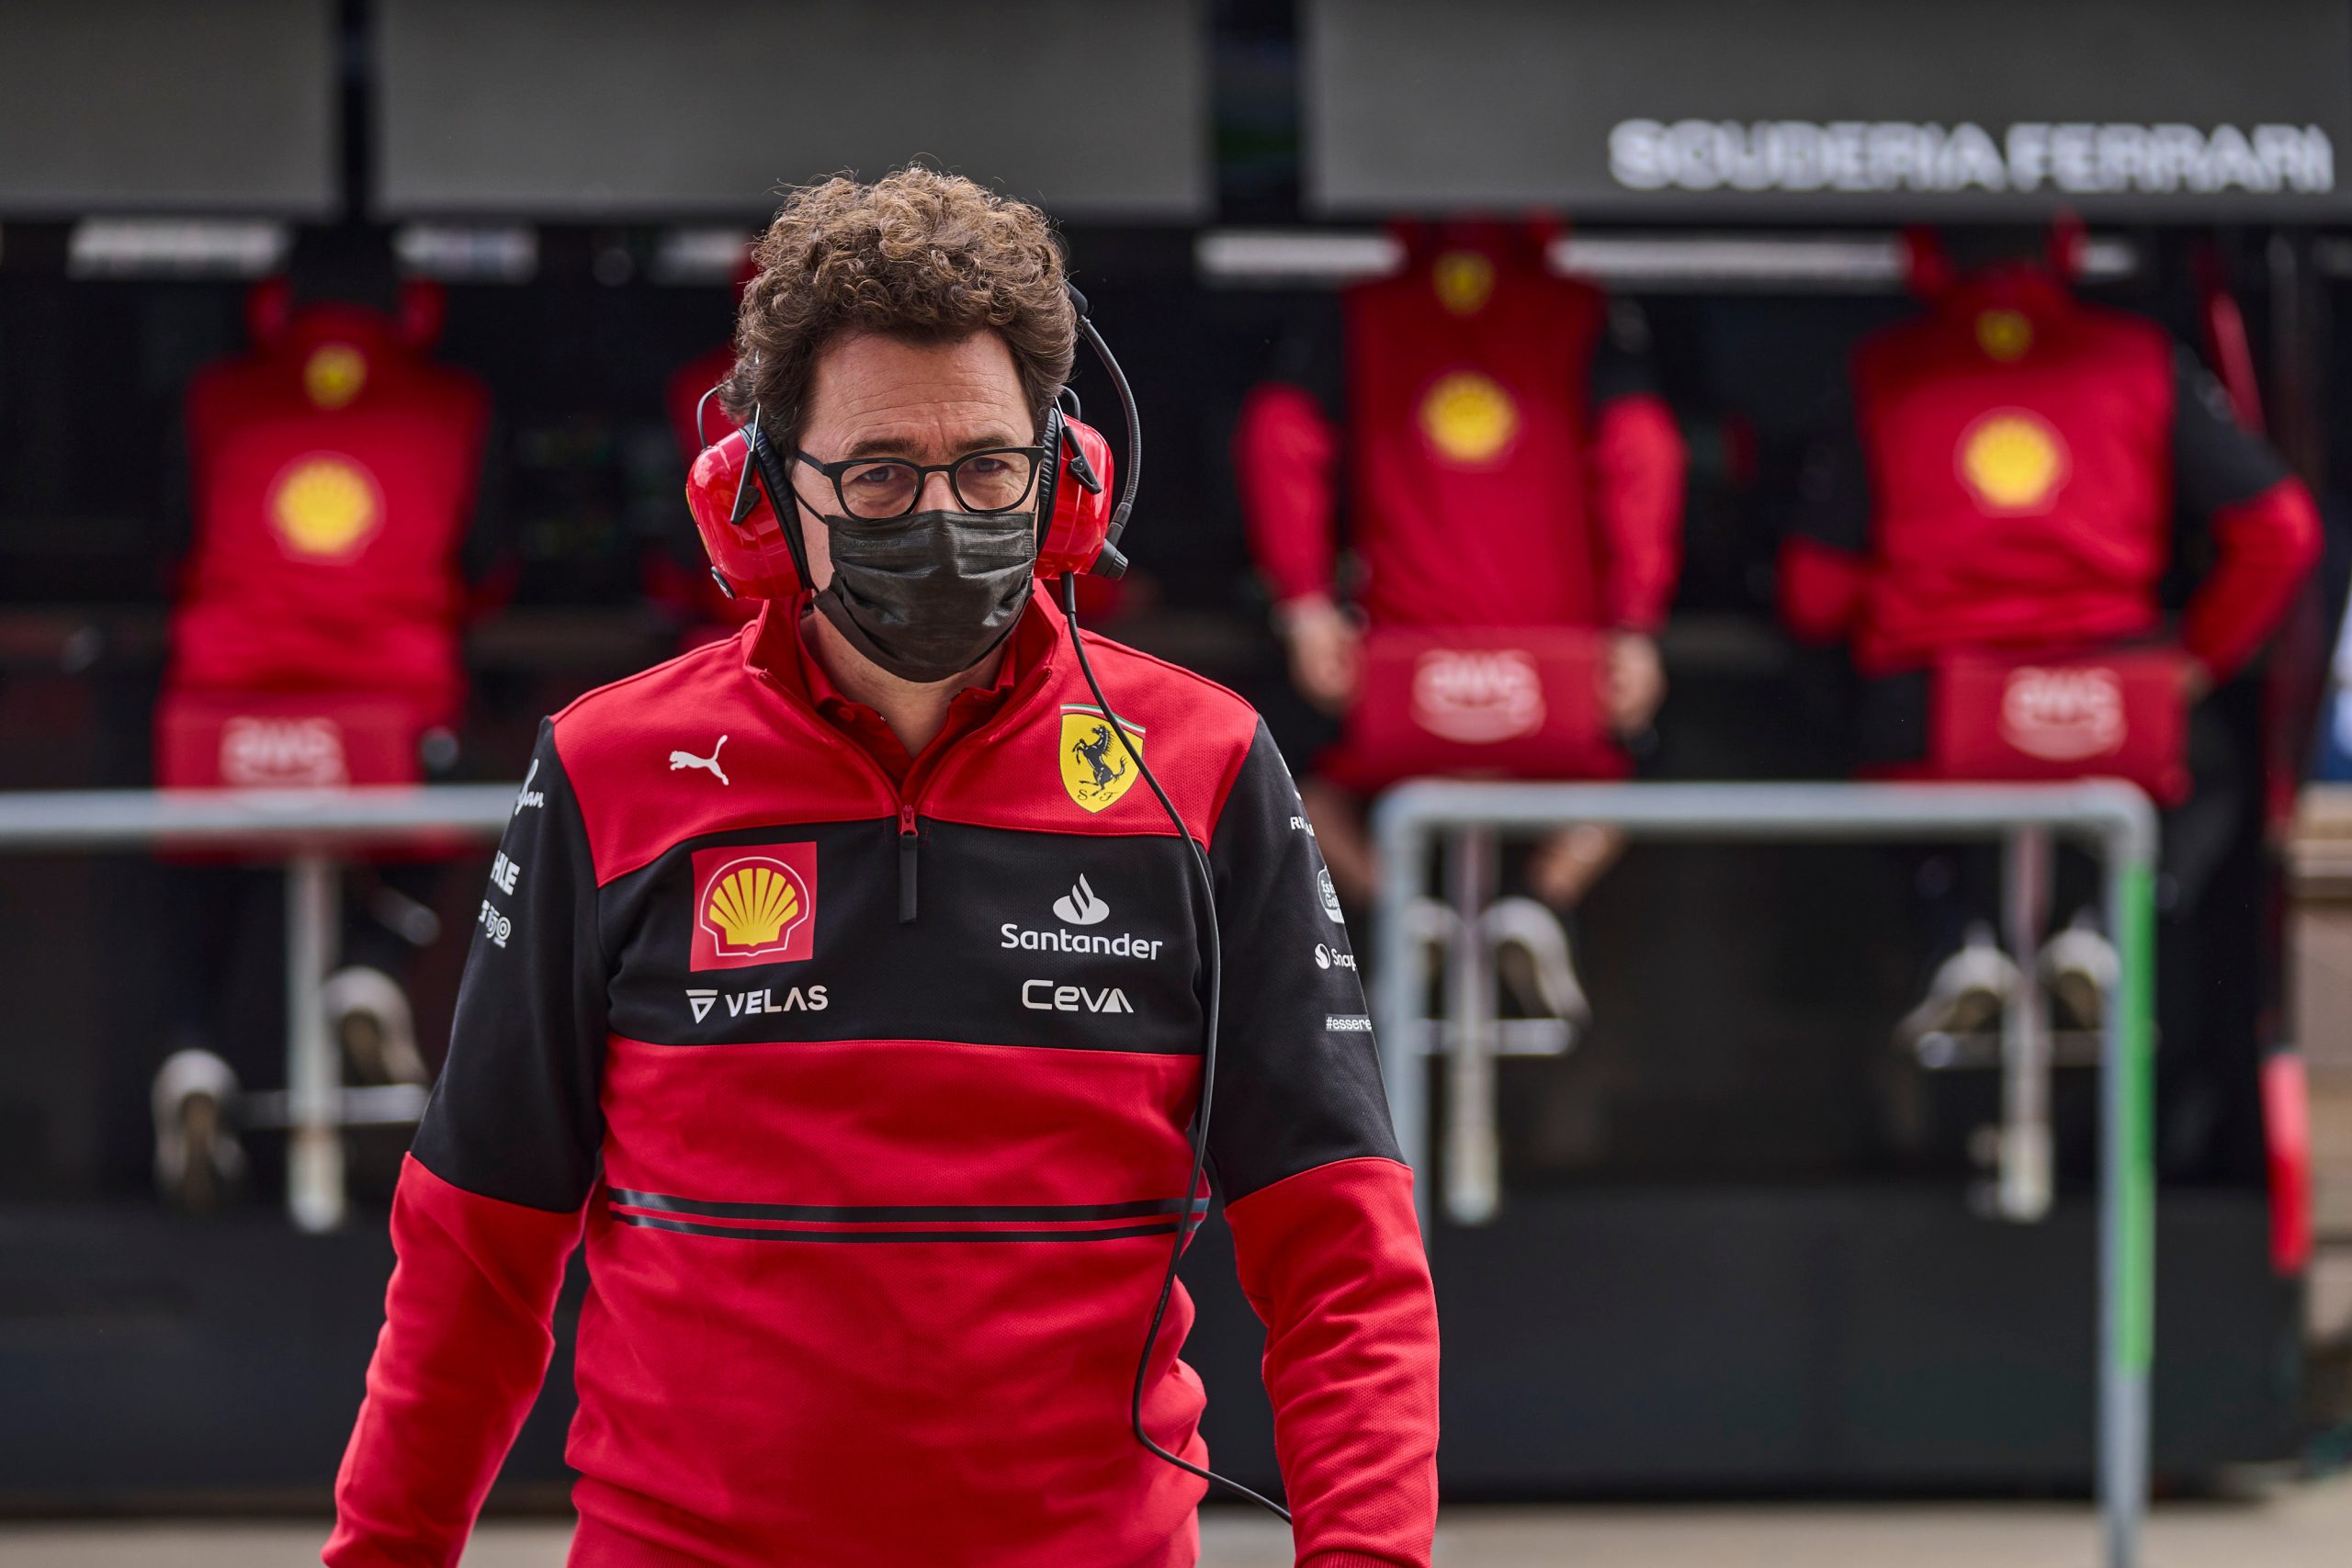 Storia Binotto in Ferrari, le sue imprese in F1 prima delle dimissioni